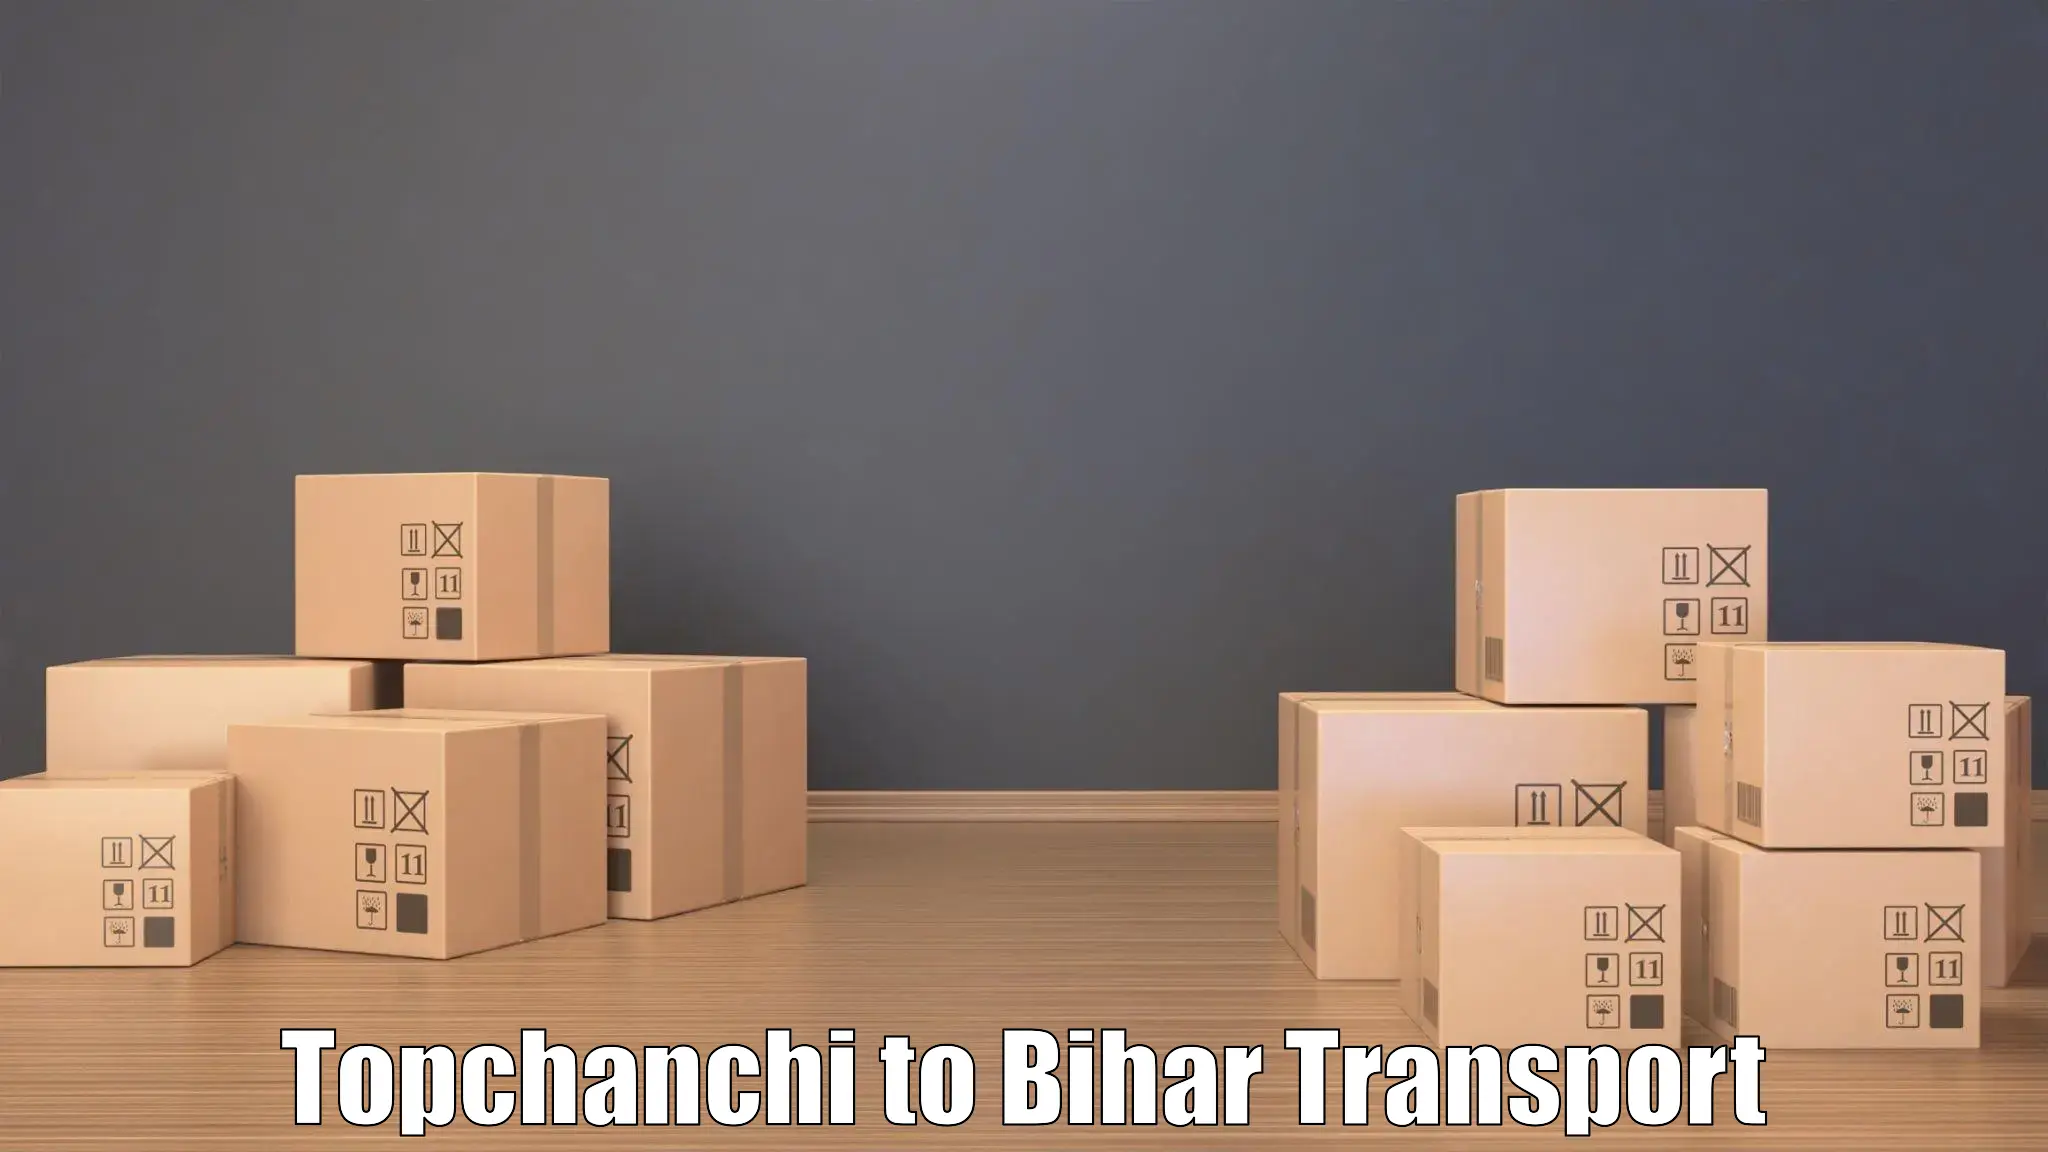 Road transport services Topchanchi to Maharajganj Vaishali